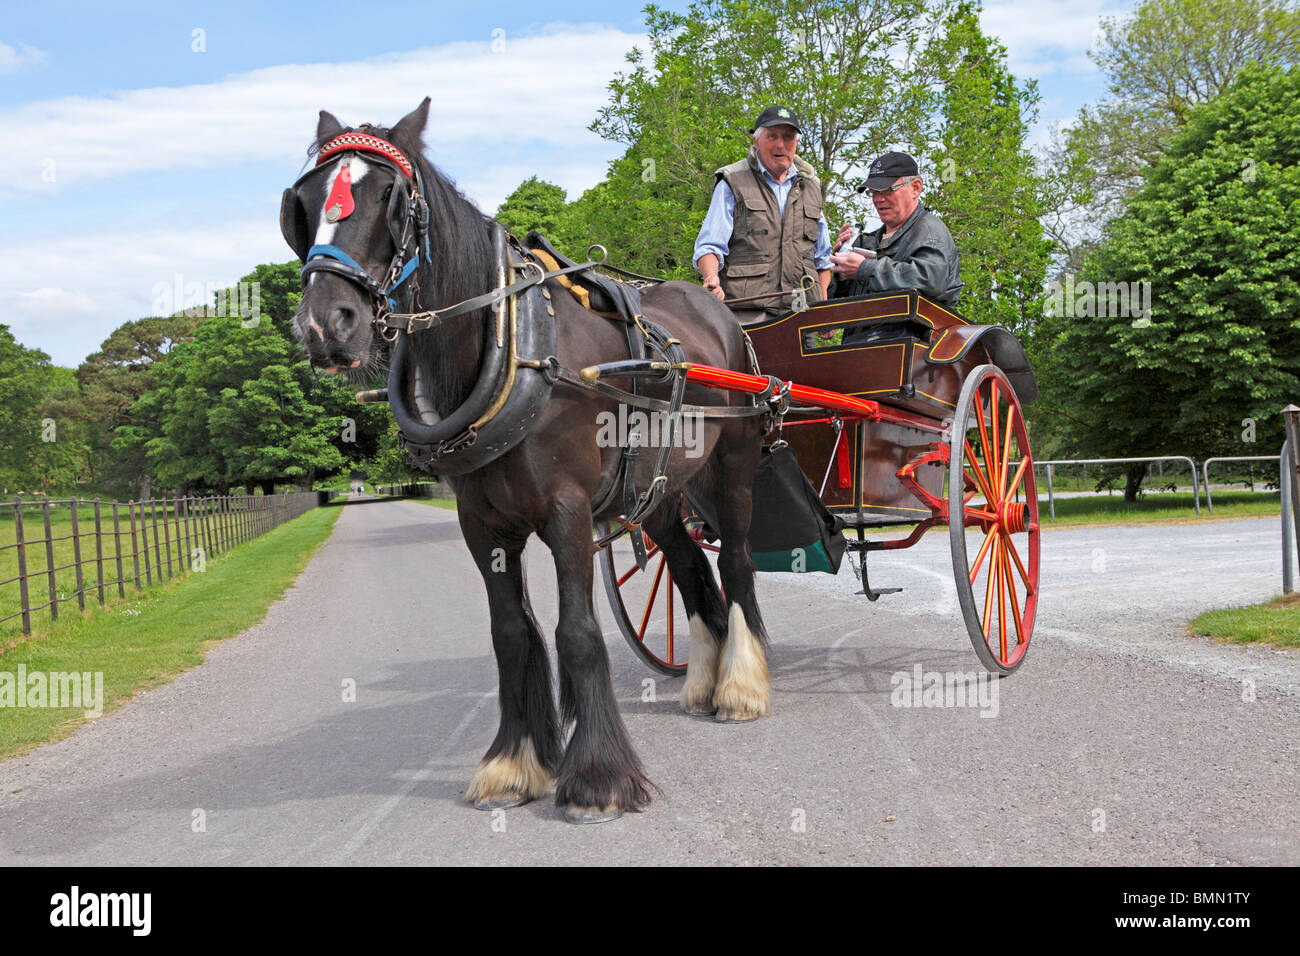 jaunty car, Killarney National Park, Co. Kerry, Republic of Ireland Stock Photo